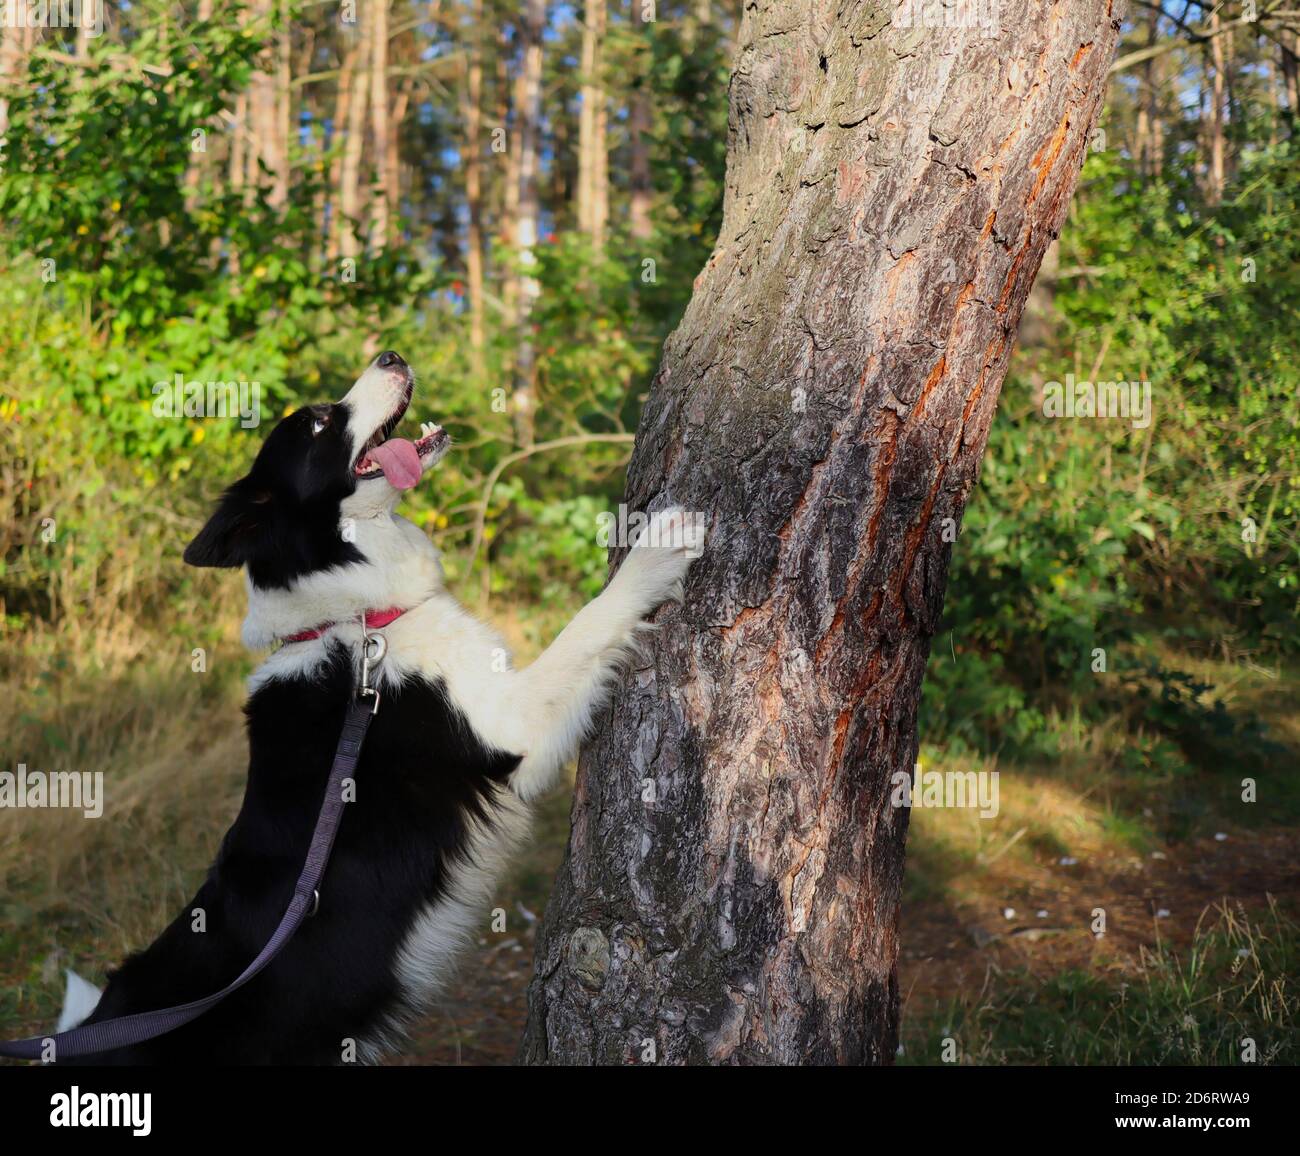 Liebenswert Border Collie mit Zunge auf einer Leash springt mit seiner Pfote auf Baum Trunk während sonnigen Herbsttag. Niedlicher Schwarz-Weiß-Hund im Wald. Stockfoto